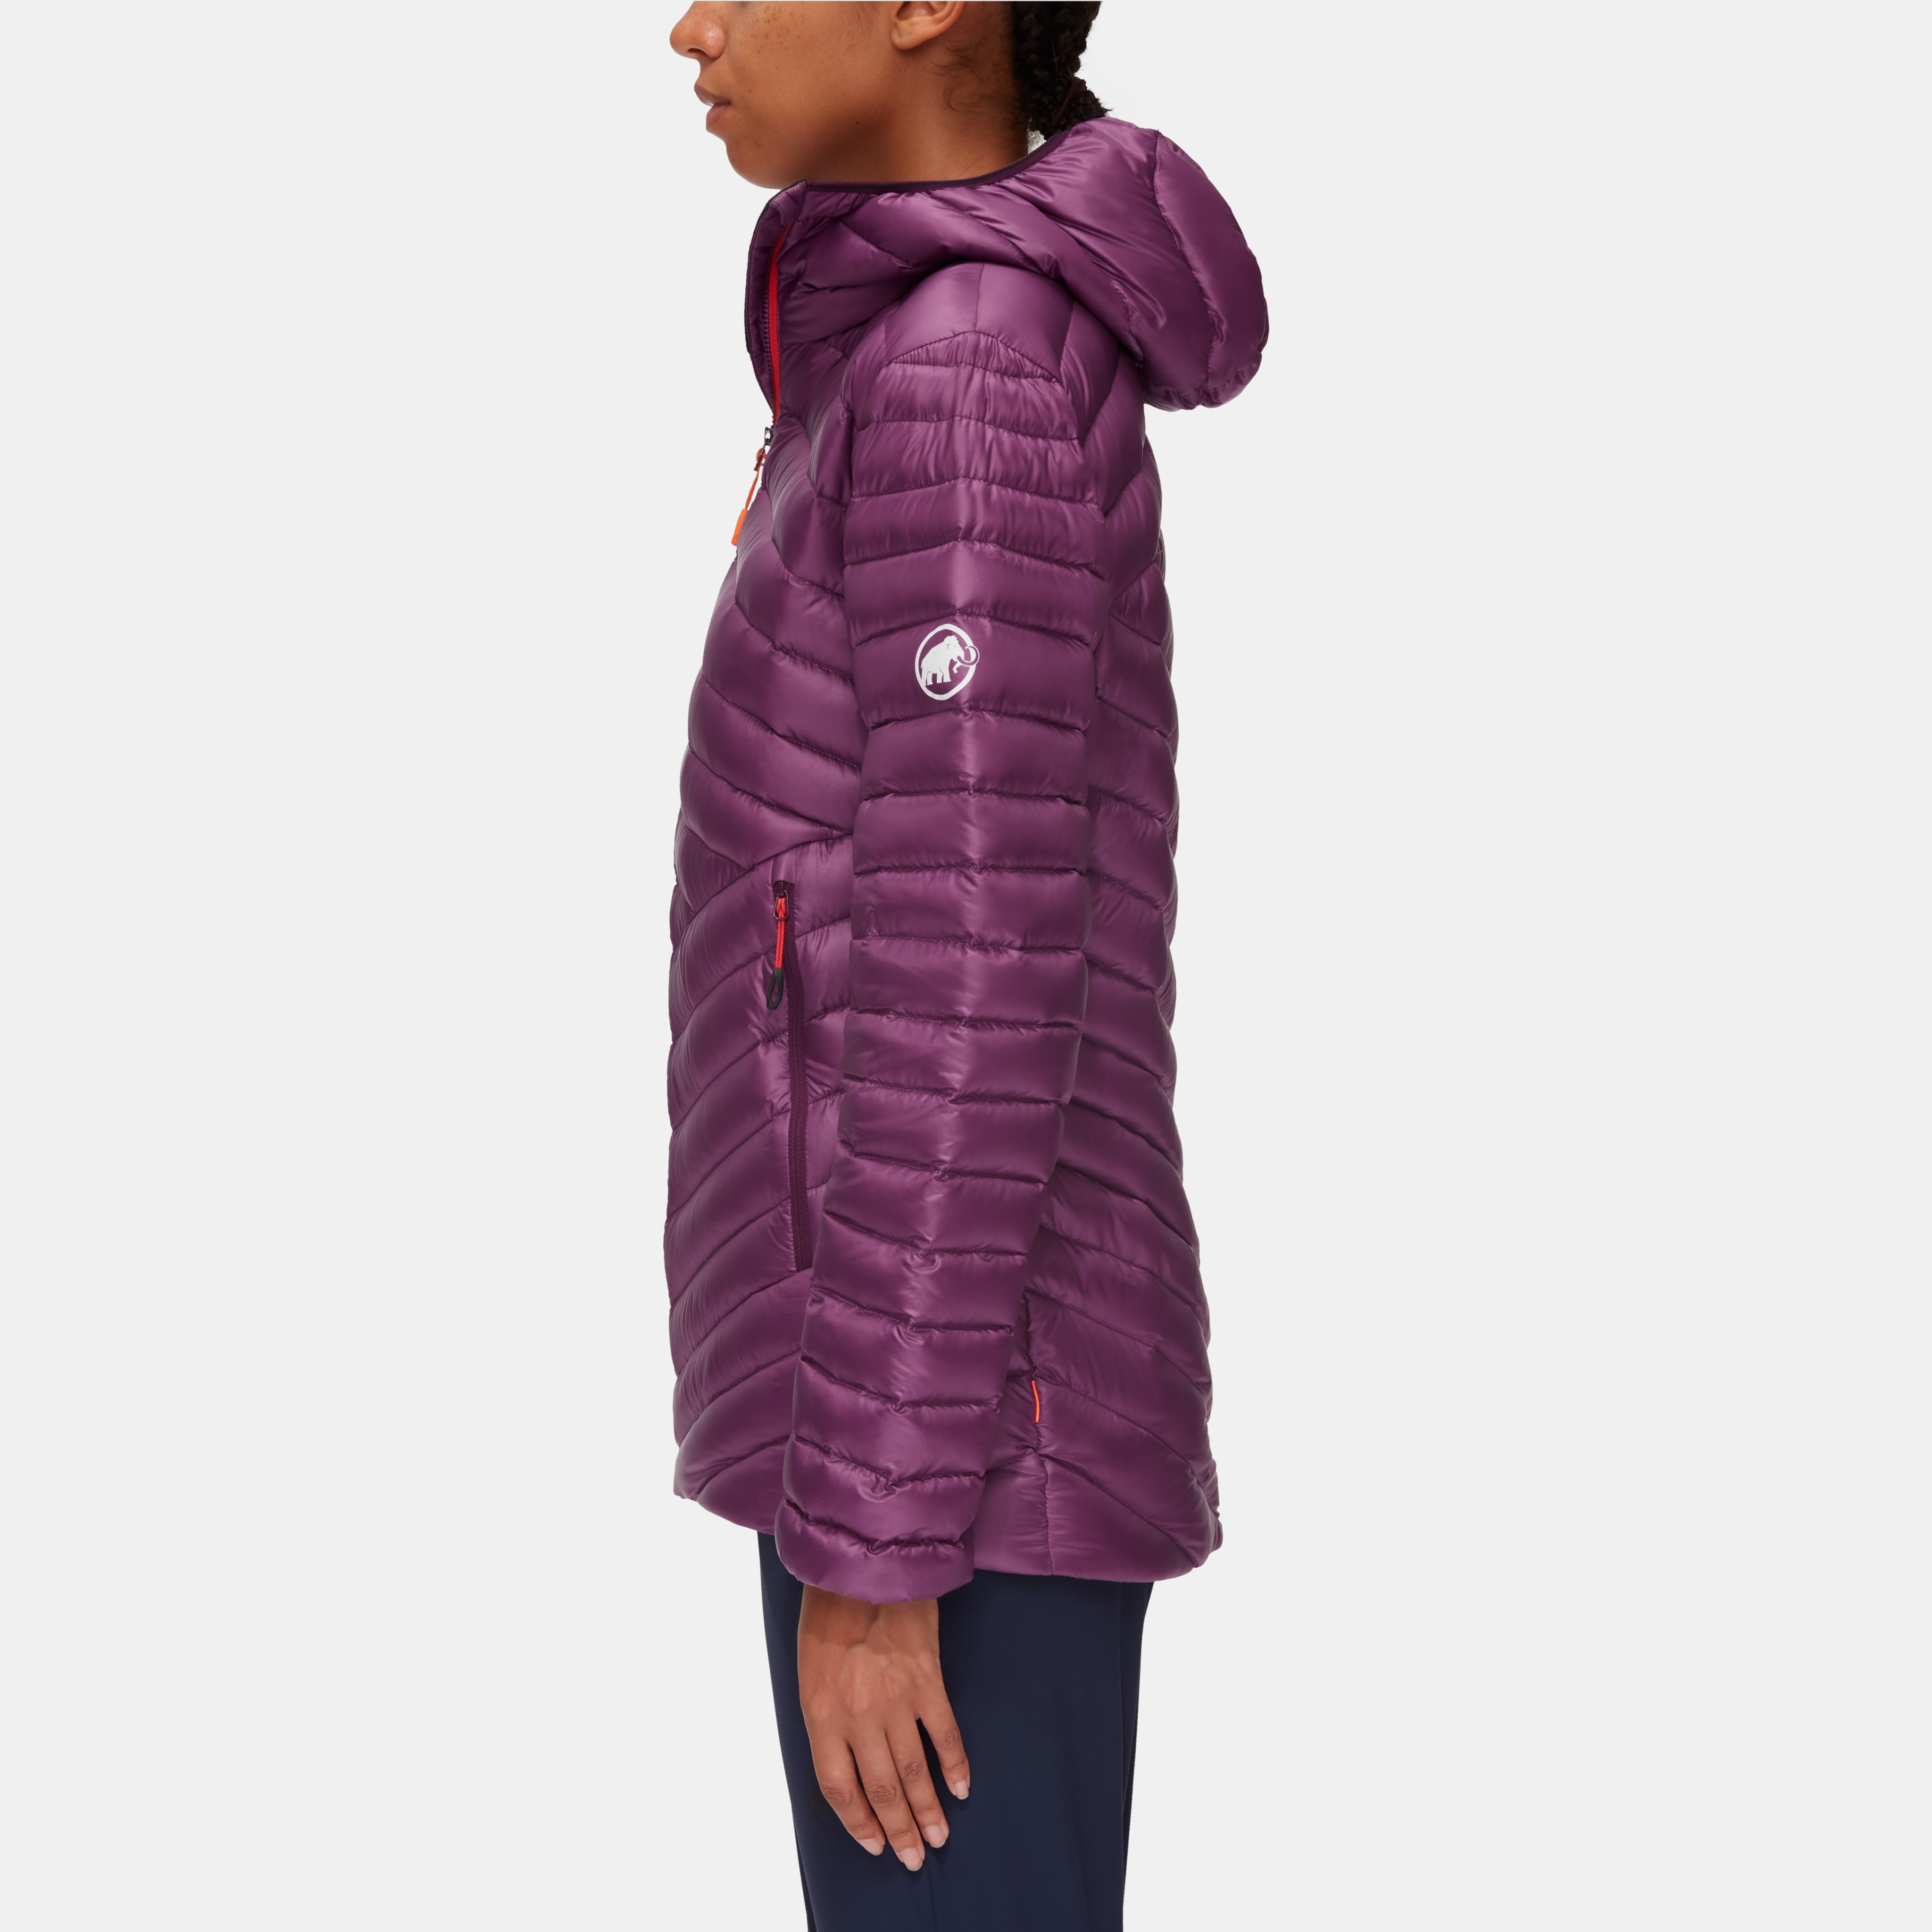 Broad Peak IN Hooded Jacket Women product image